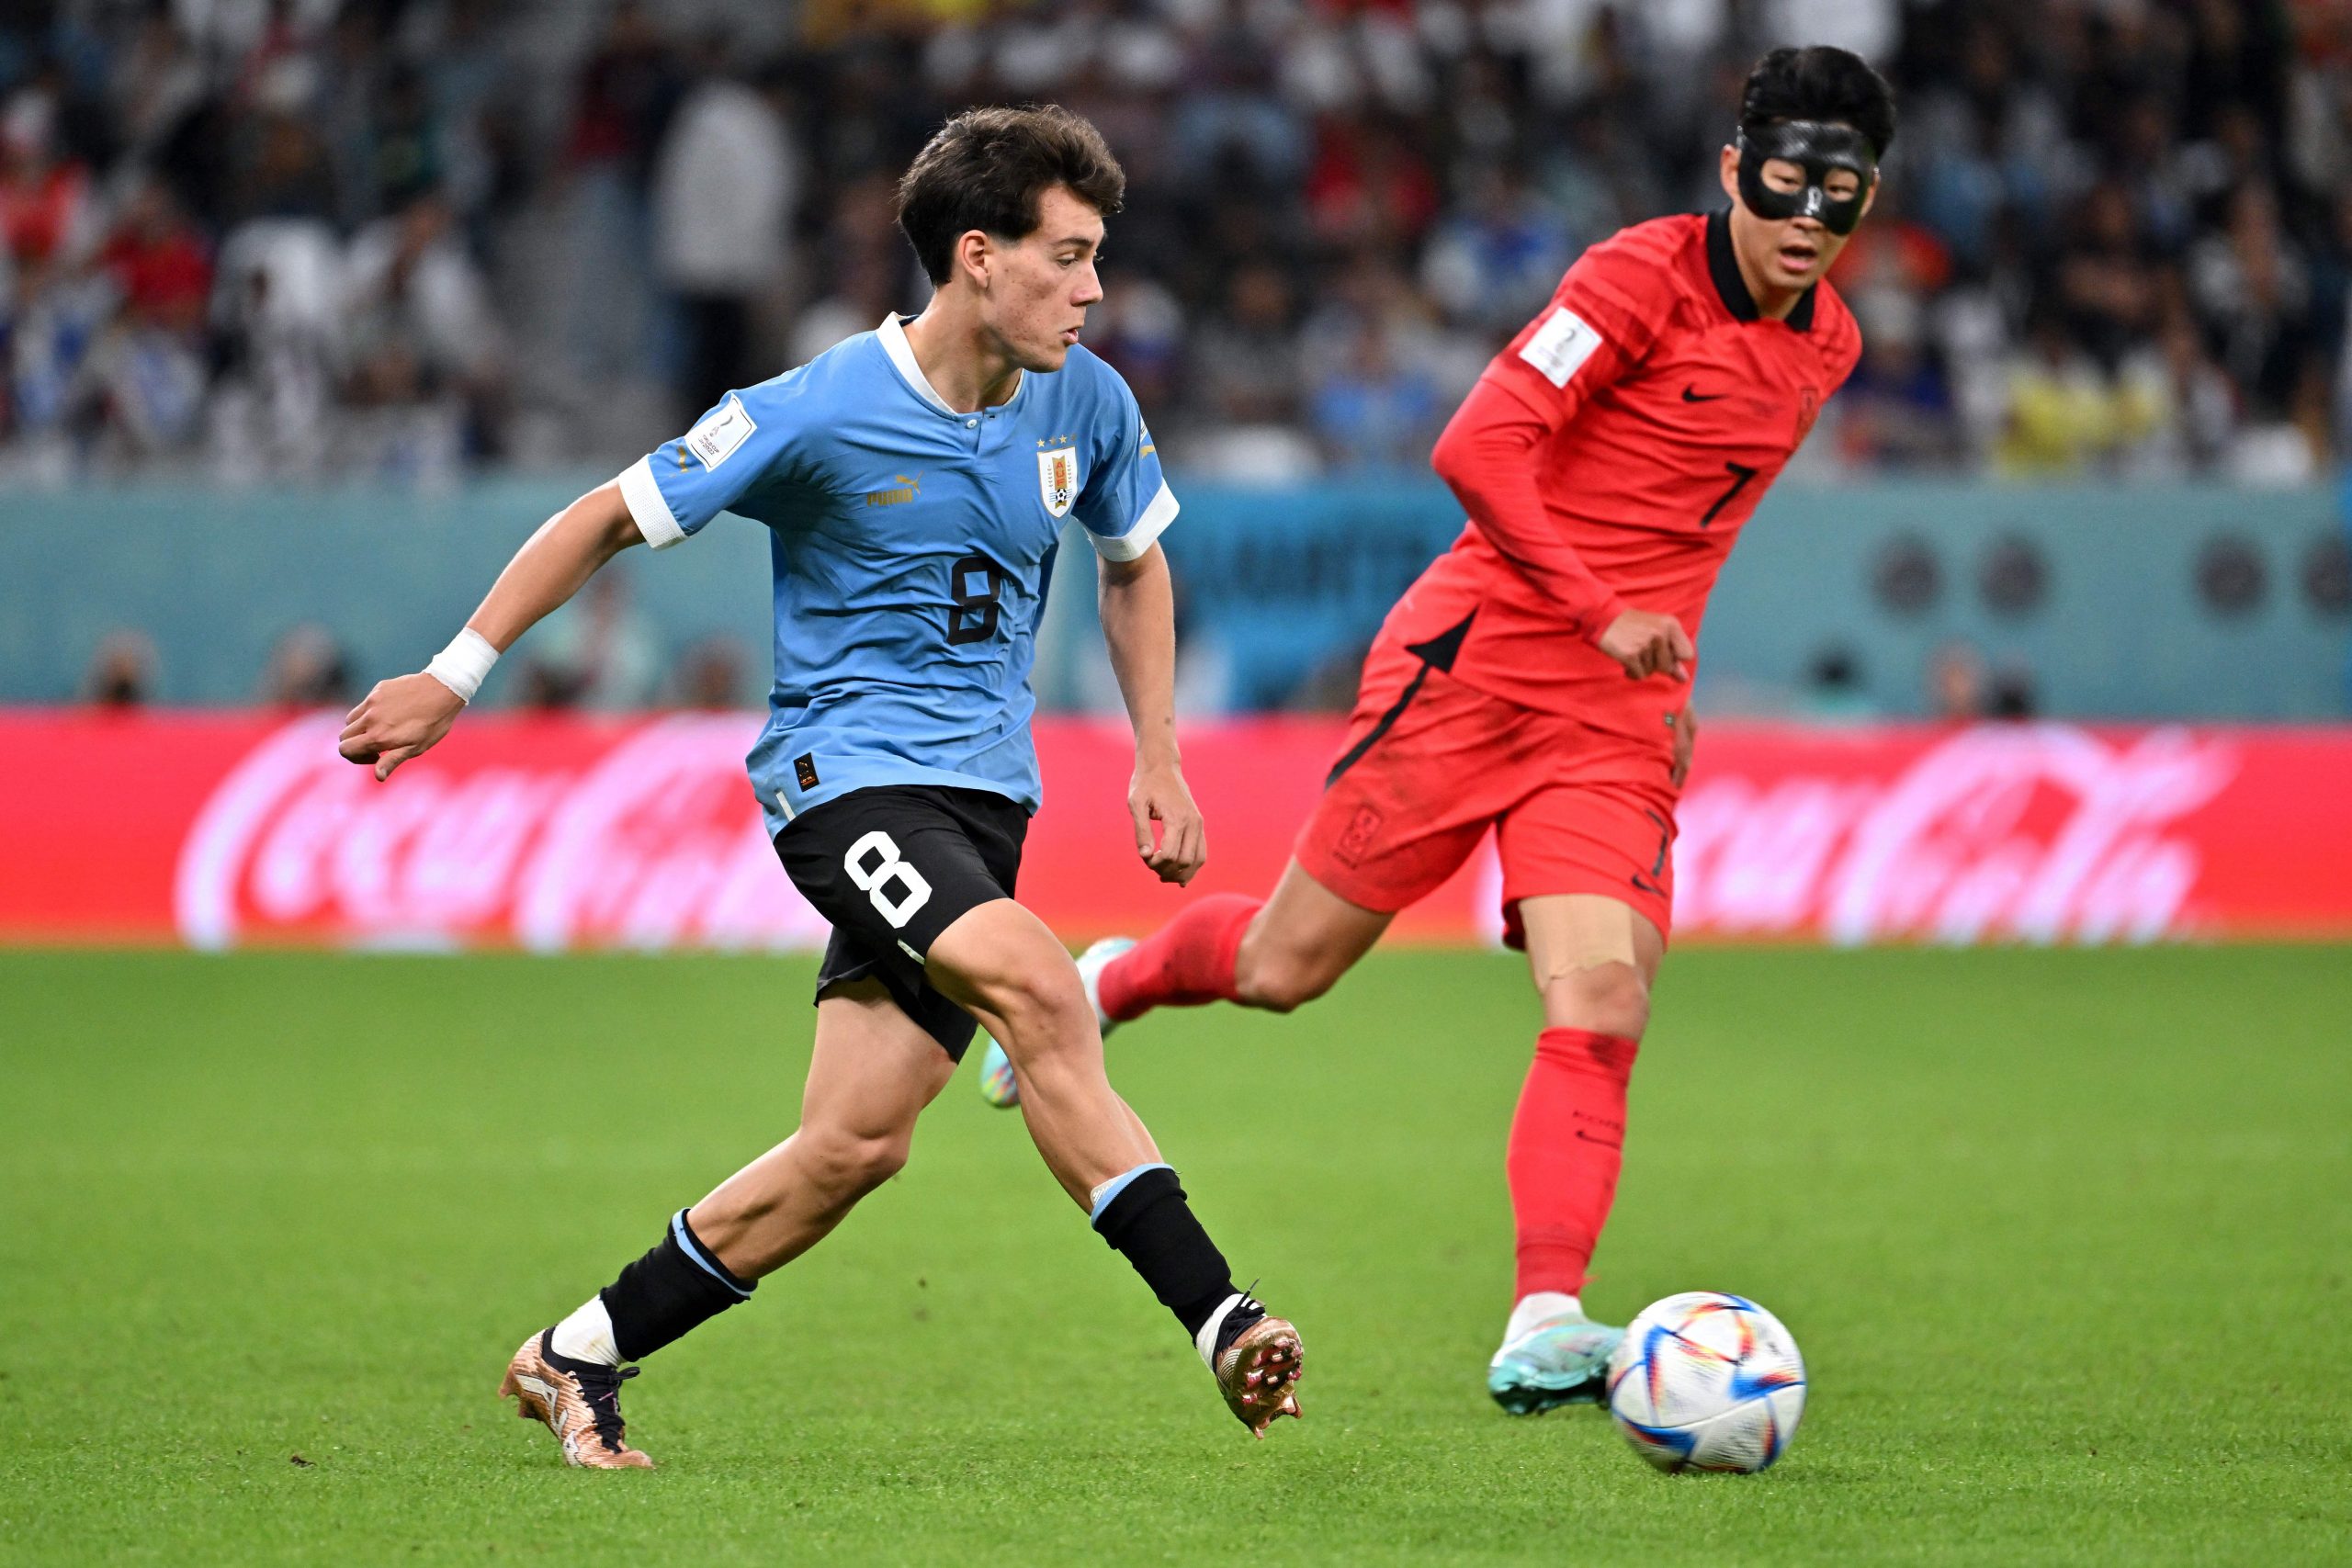 Pellistri tras empate de Uruguay frente a Corea del Sur: “Es un sabor amargo”